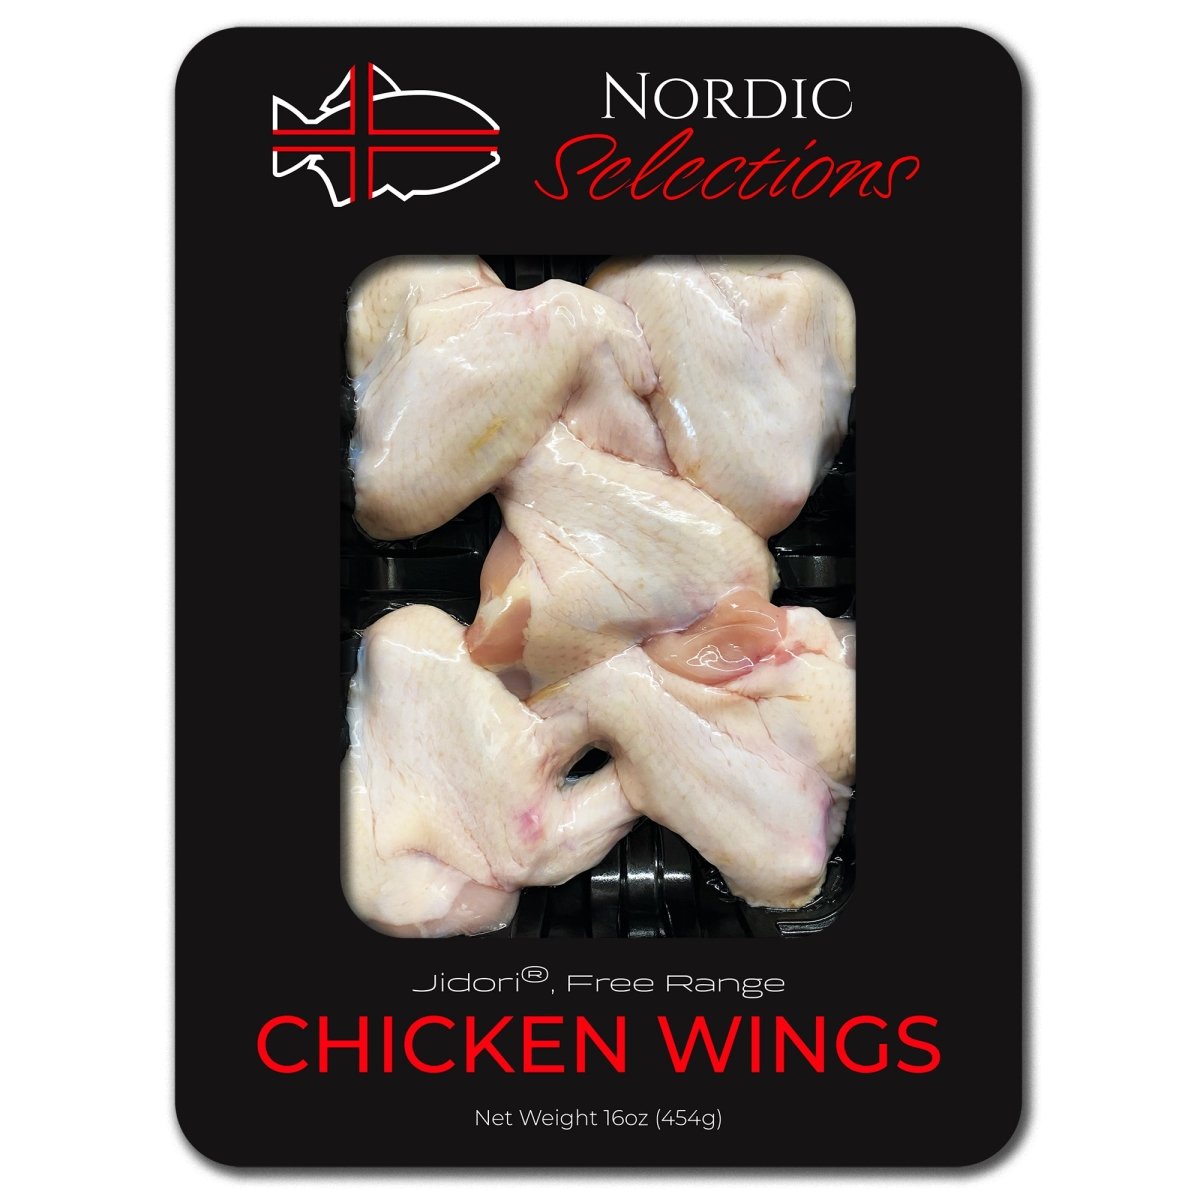 Jidori® Free Range, Non-GMO Chicken: Michelin-approved quality